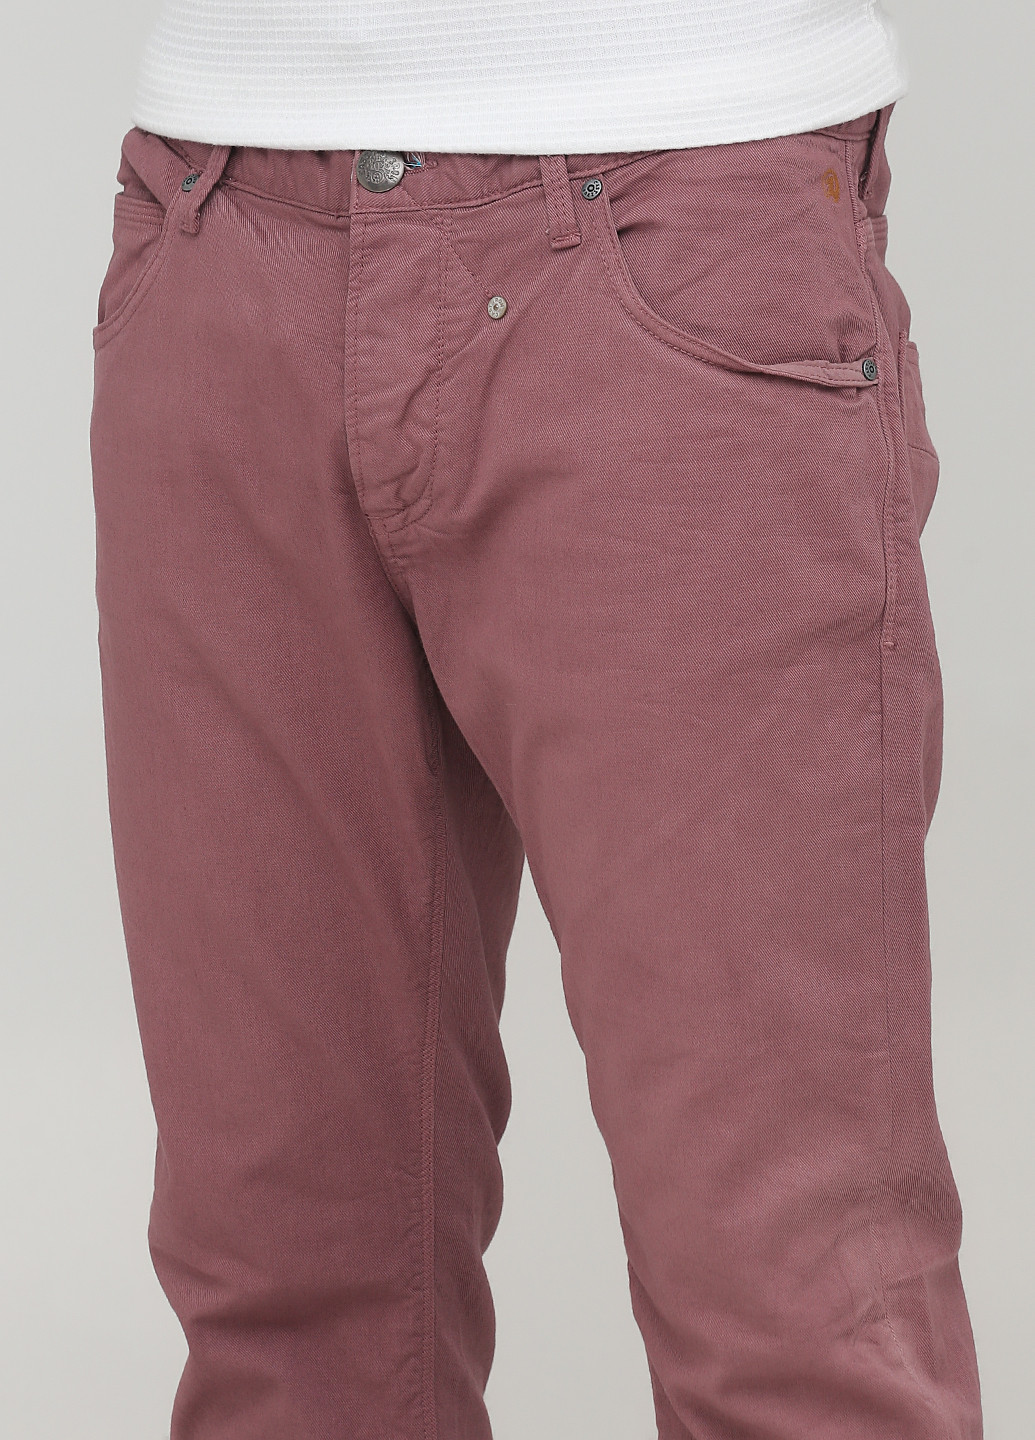 Сиреневые джинсовые демисезонные прямые брюки Cast Iron